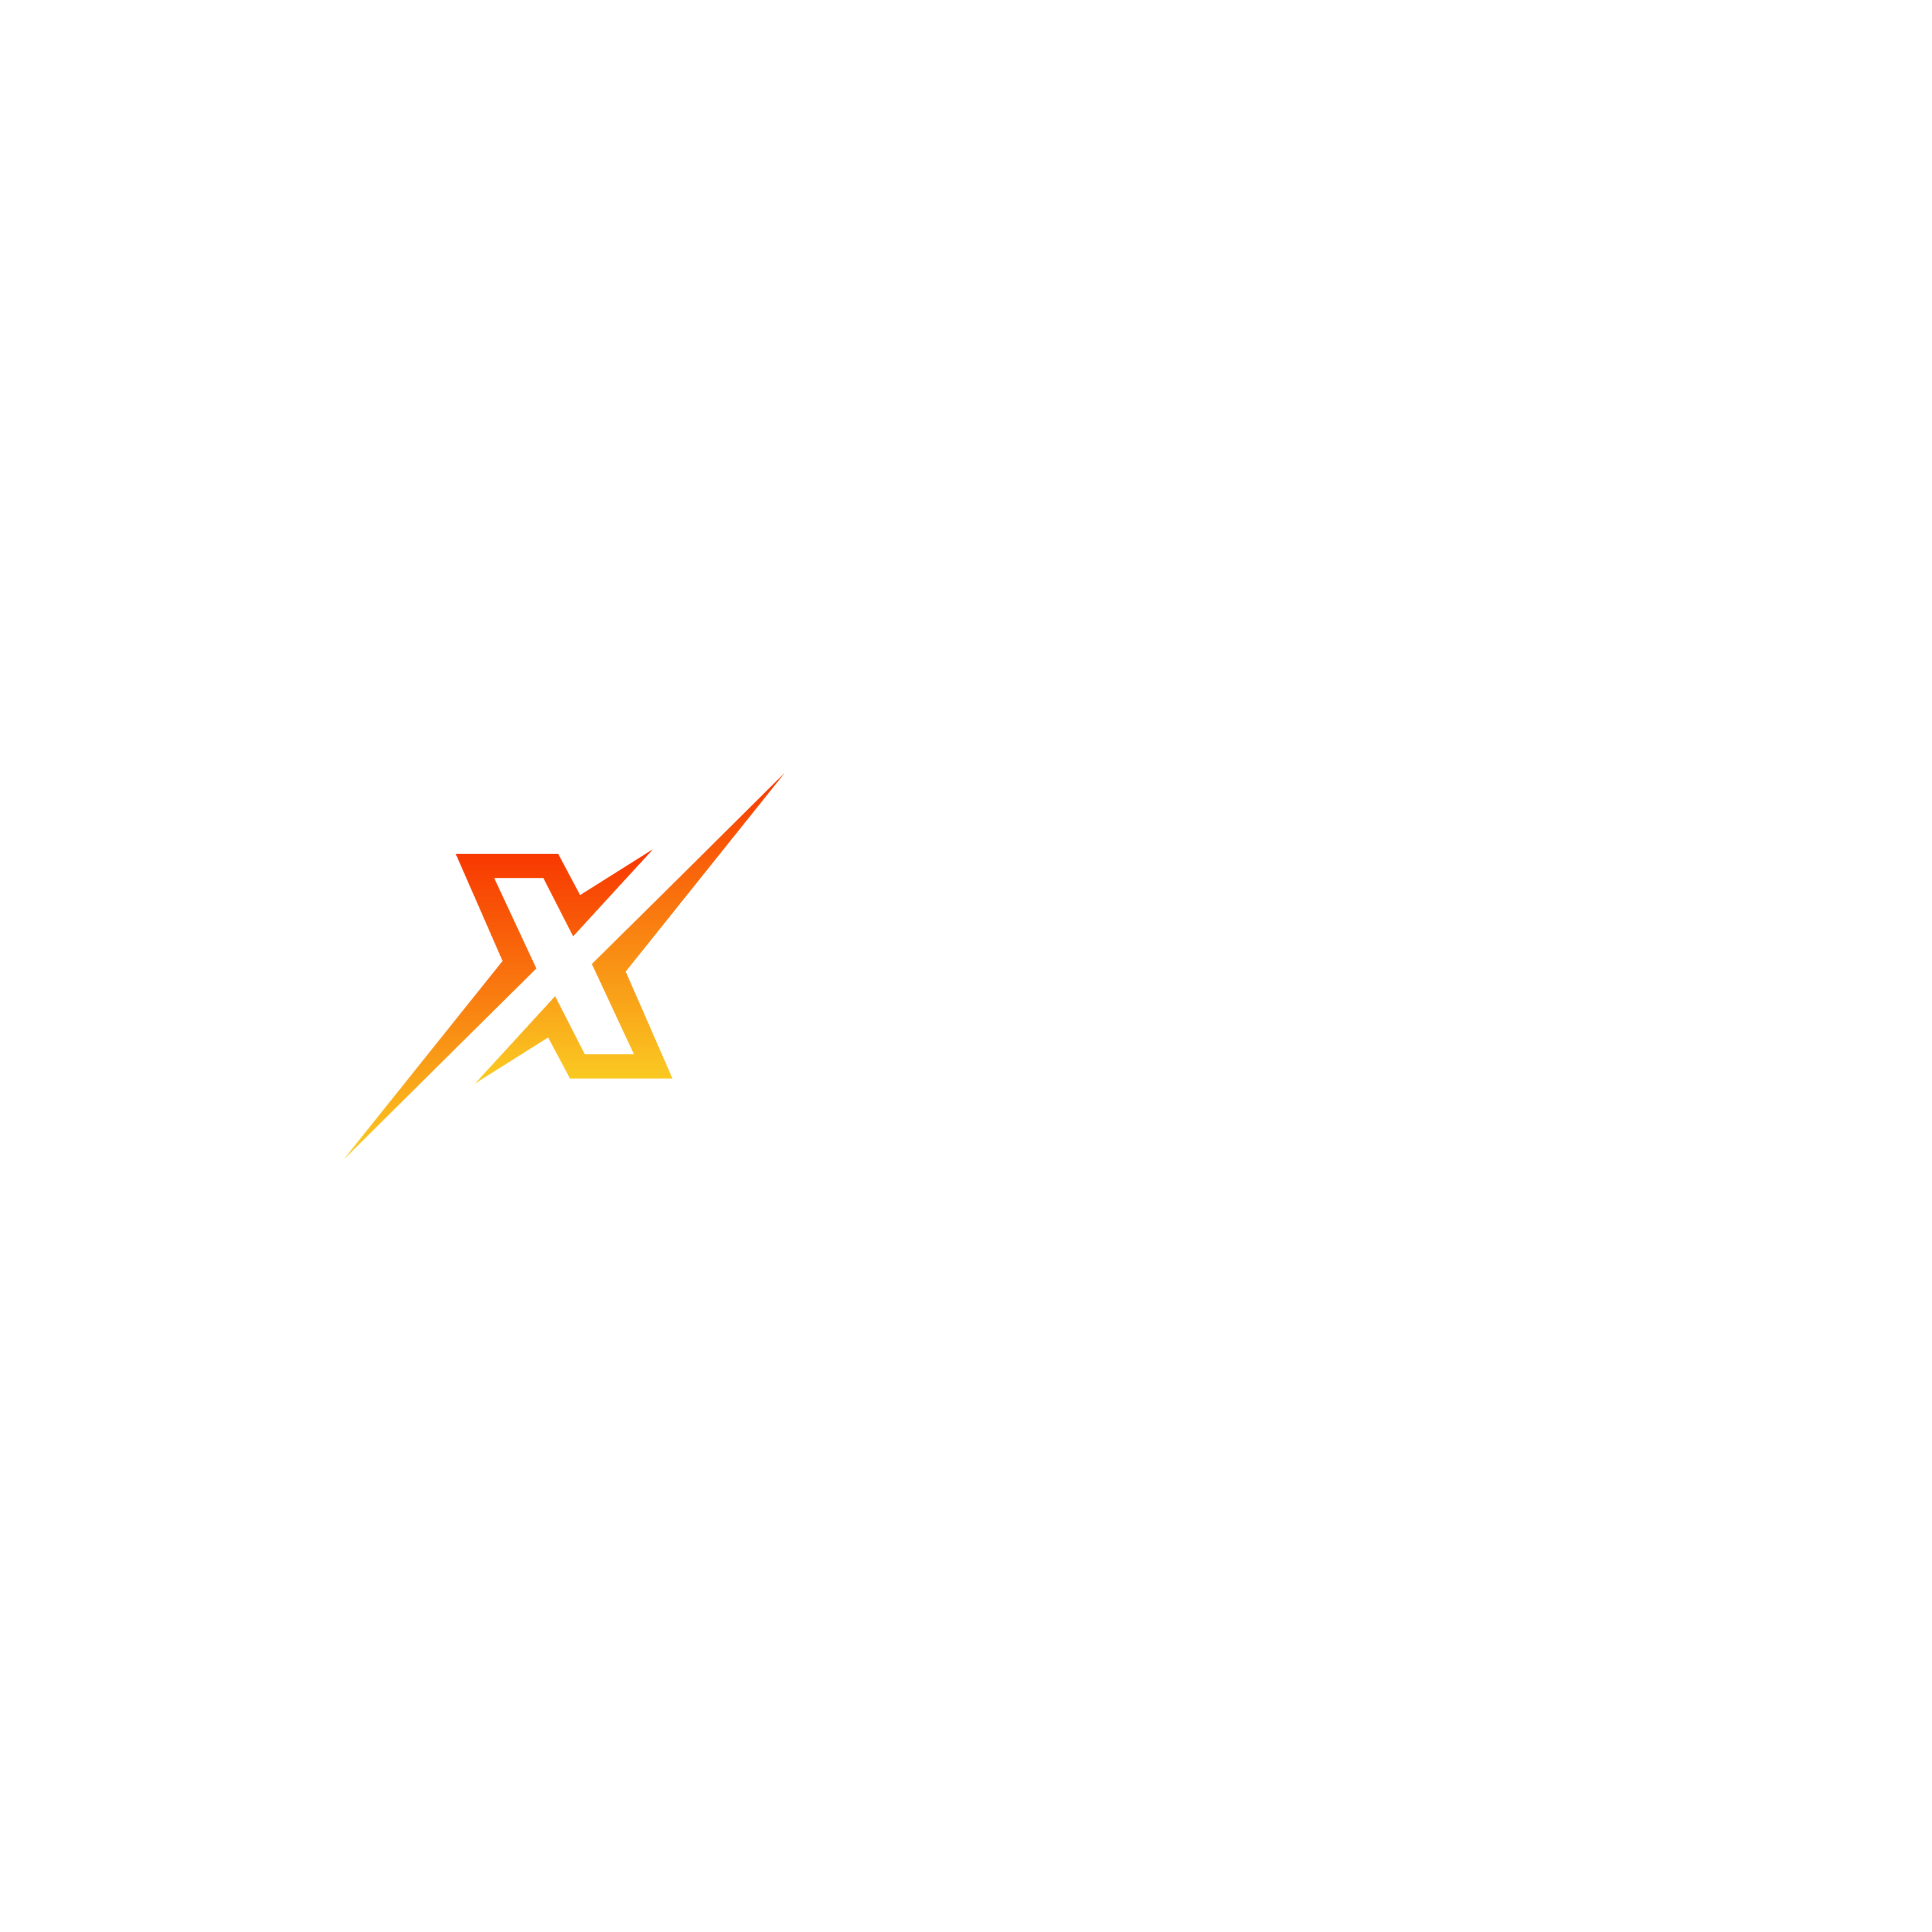 Sdxworld Digital Marketing Company